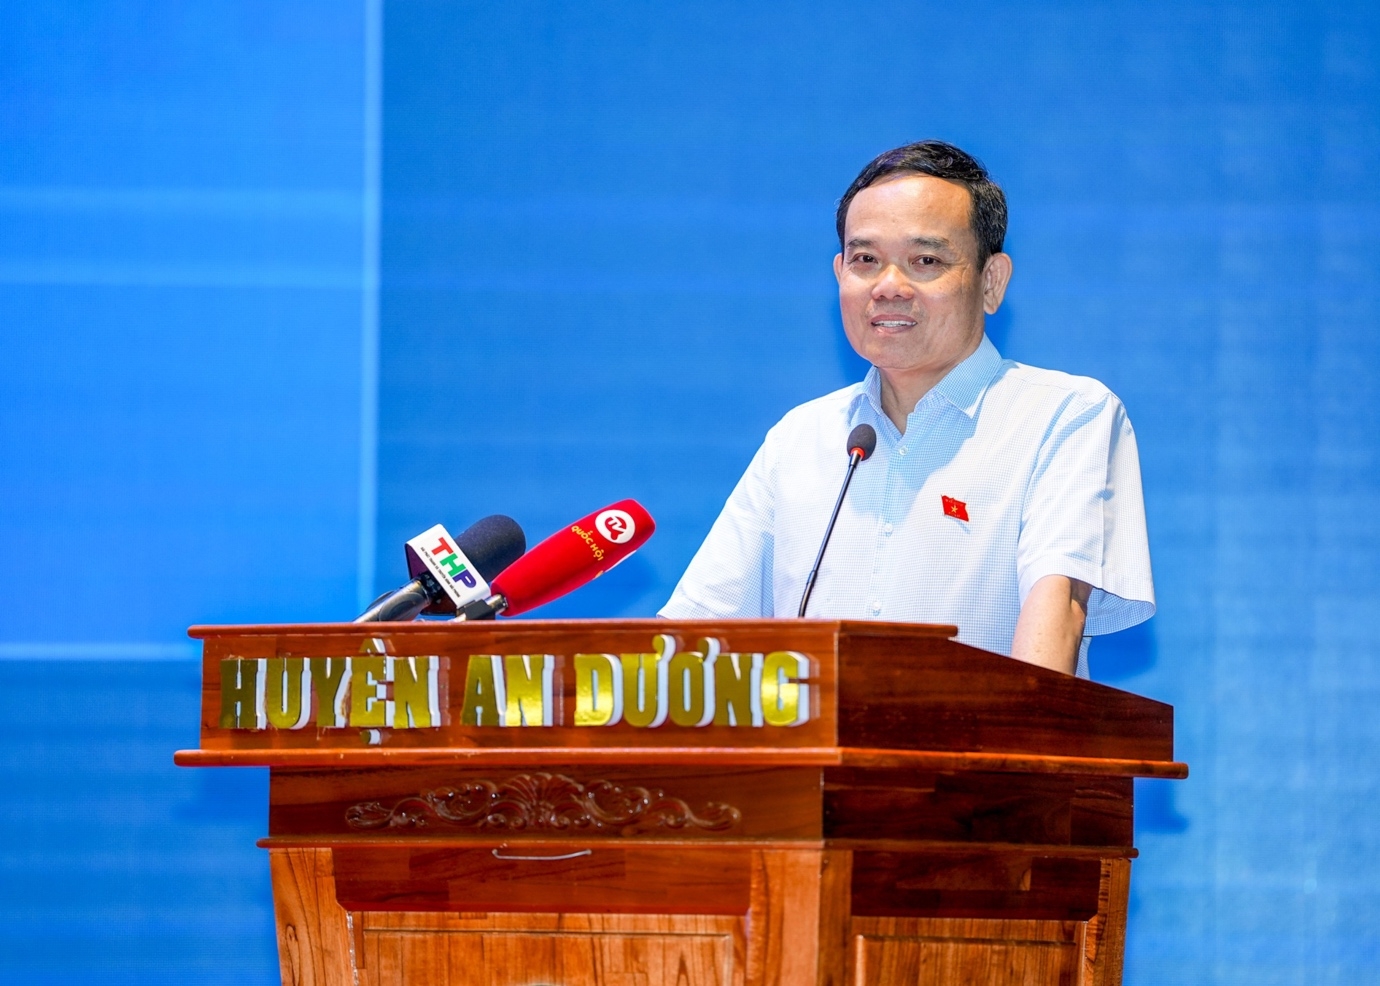 Phó Thủ tướng Chính phủ Trần Lưu Quang tiếp xúc cử tri tại Hải Phòng